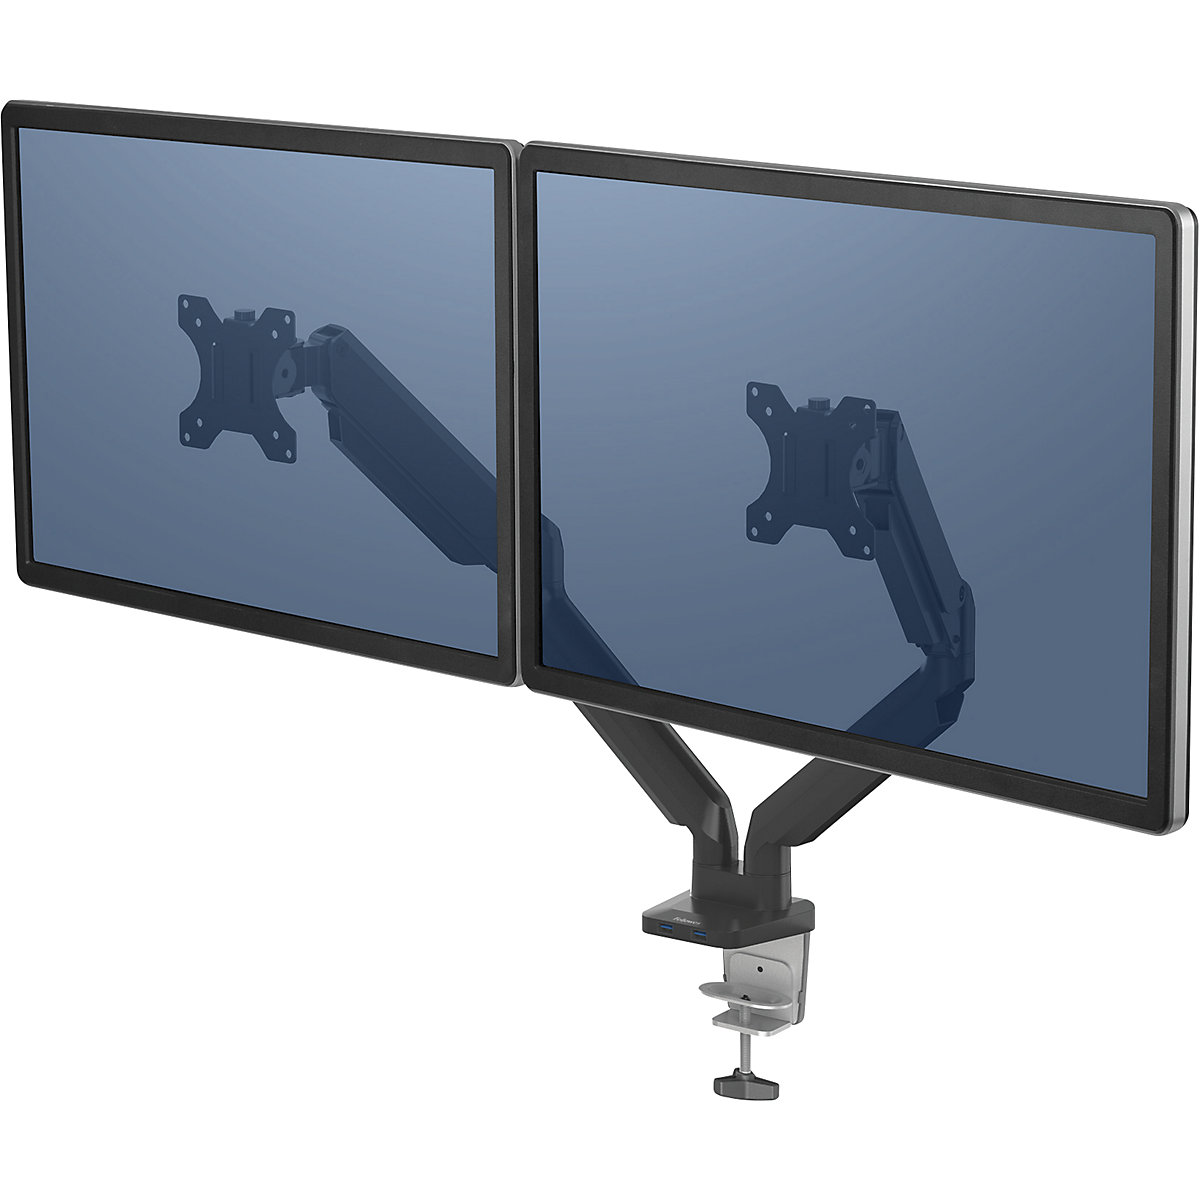 Braço de monitor PLATINUM SERIES – Fellowes, braço duplo para 2 monitores, preto-5